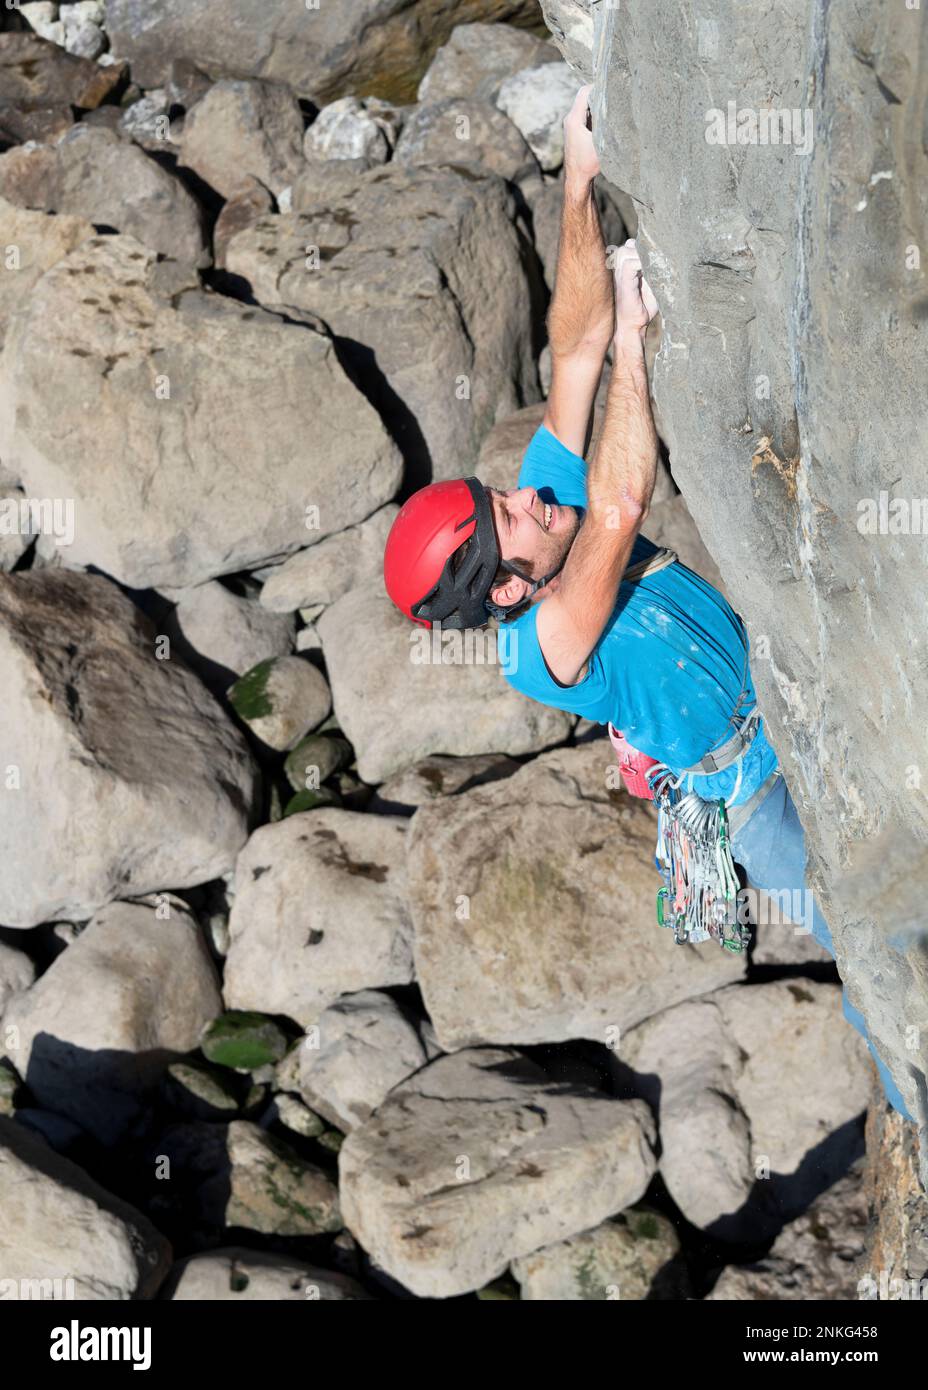 Sportif déterminé grimpant sur des rochers Banque D'Images